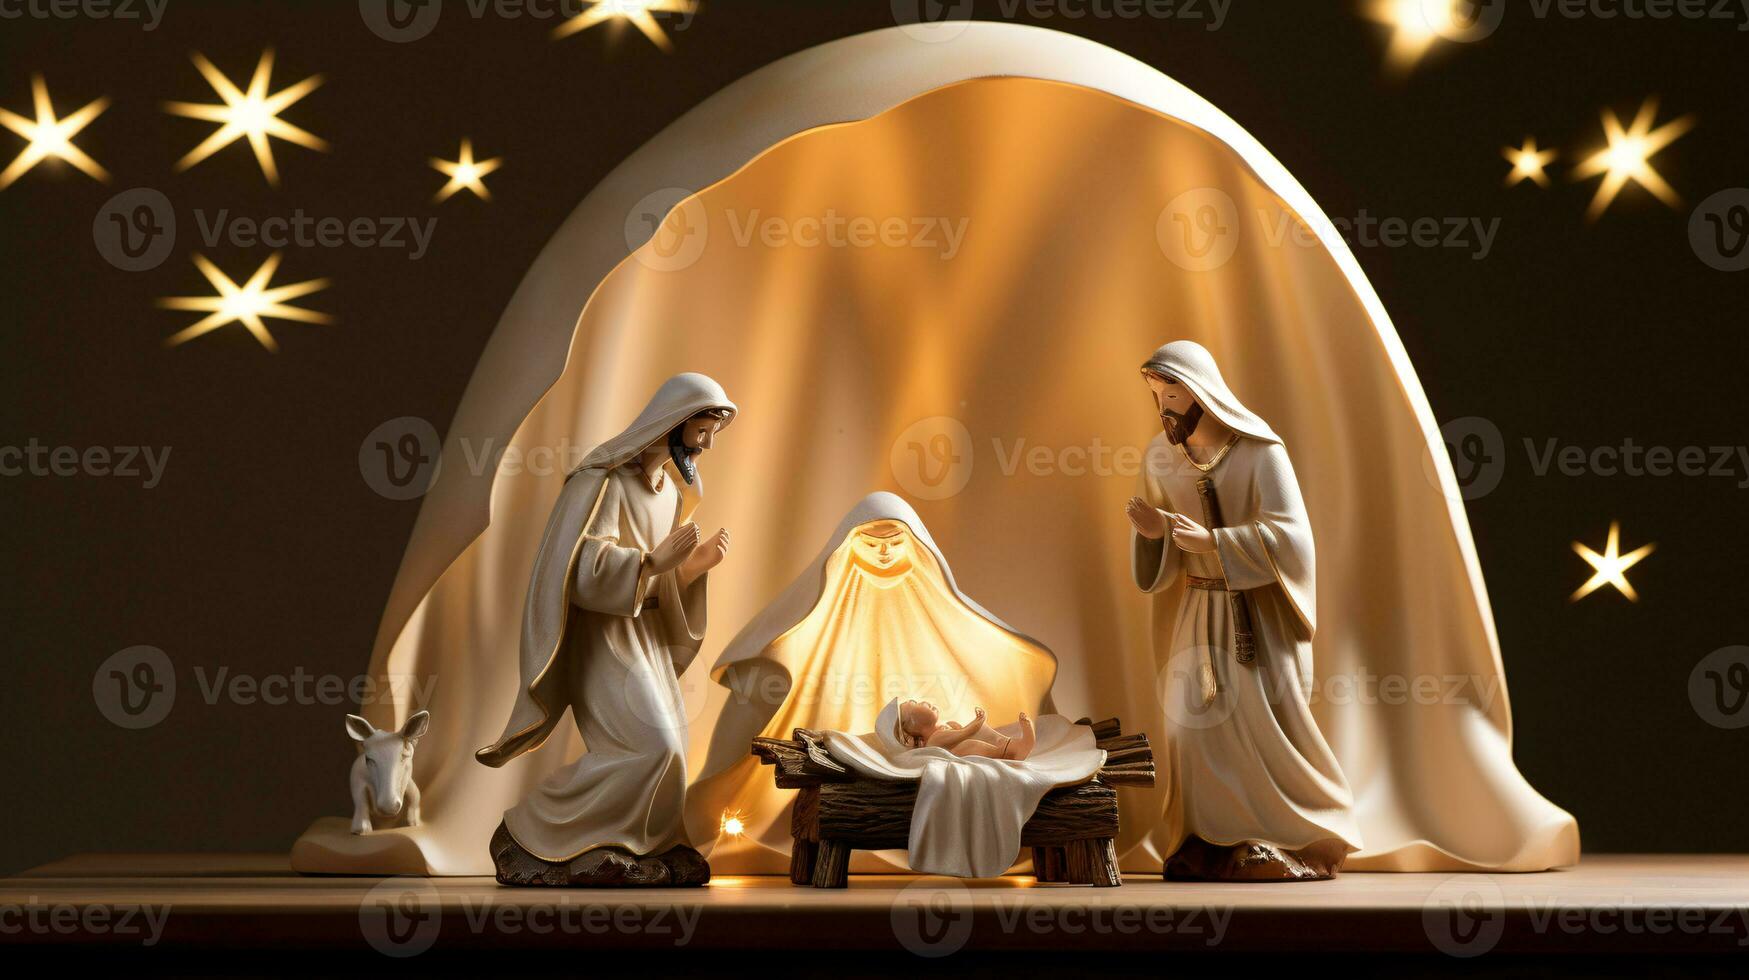 ai generativo Navidad iluminado por las estrellas natividad escena diorama retratar el historia de Jesús nacimiento foto